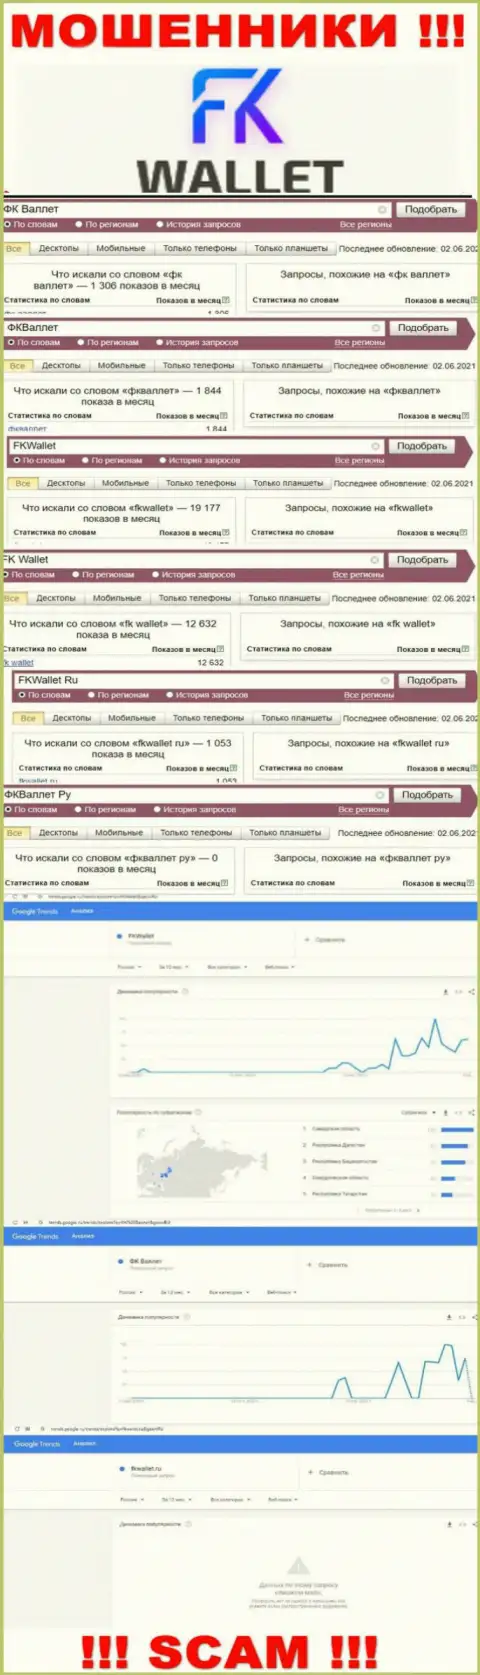 Скриншот статистических показателей online запросов по противозаконно действующей организации FK Wallet